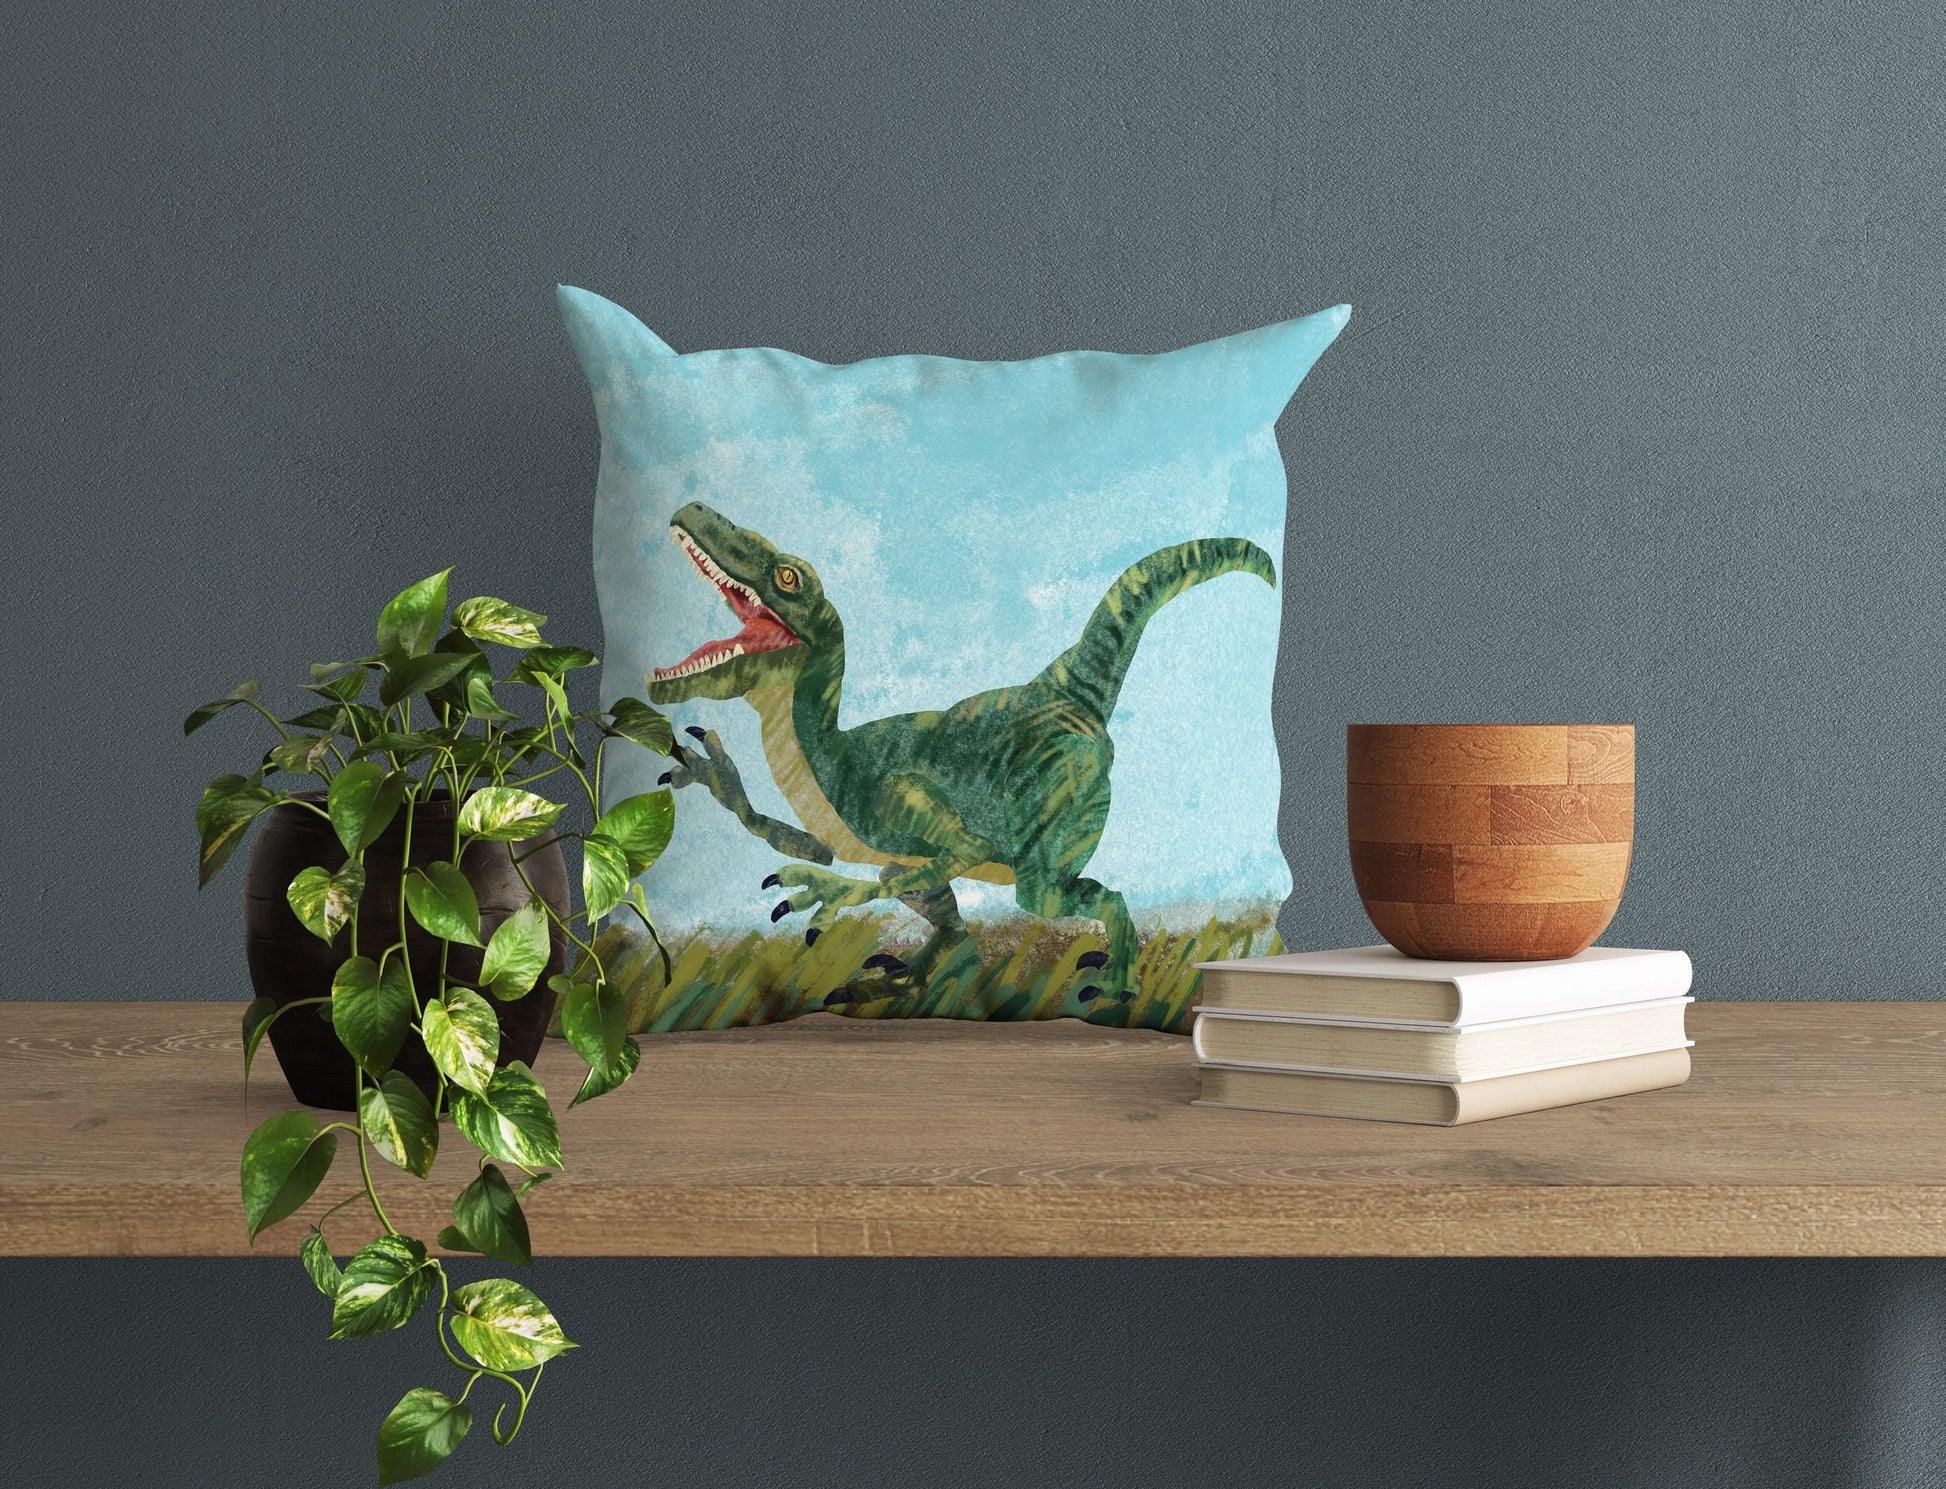 Tyrannosaurus Rex Dinosaur Pillow Cases For Kids, Toss Pillow, Abstract Throw Pillow Cover, Original Art Pillow, Green Pillow Cases, Fashion